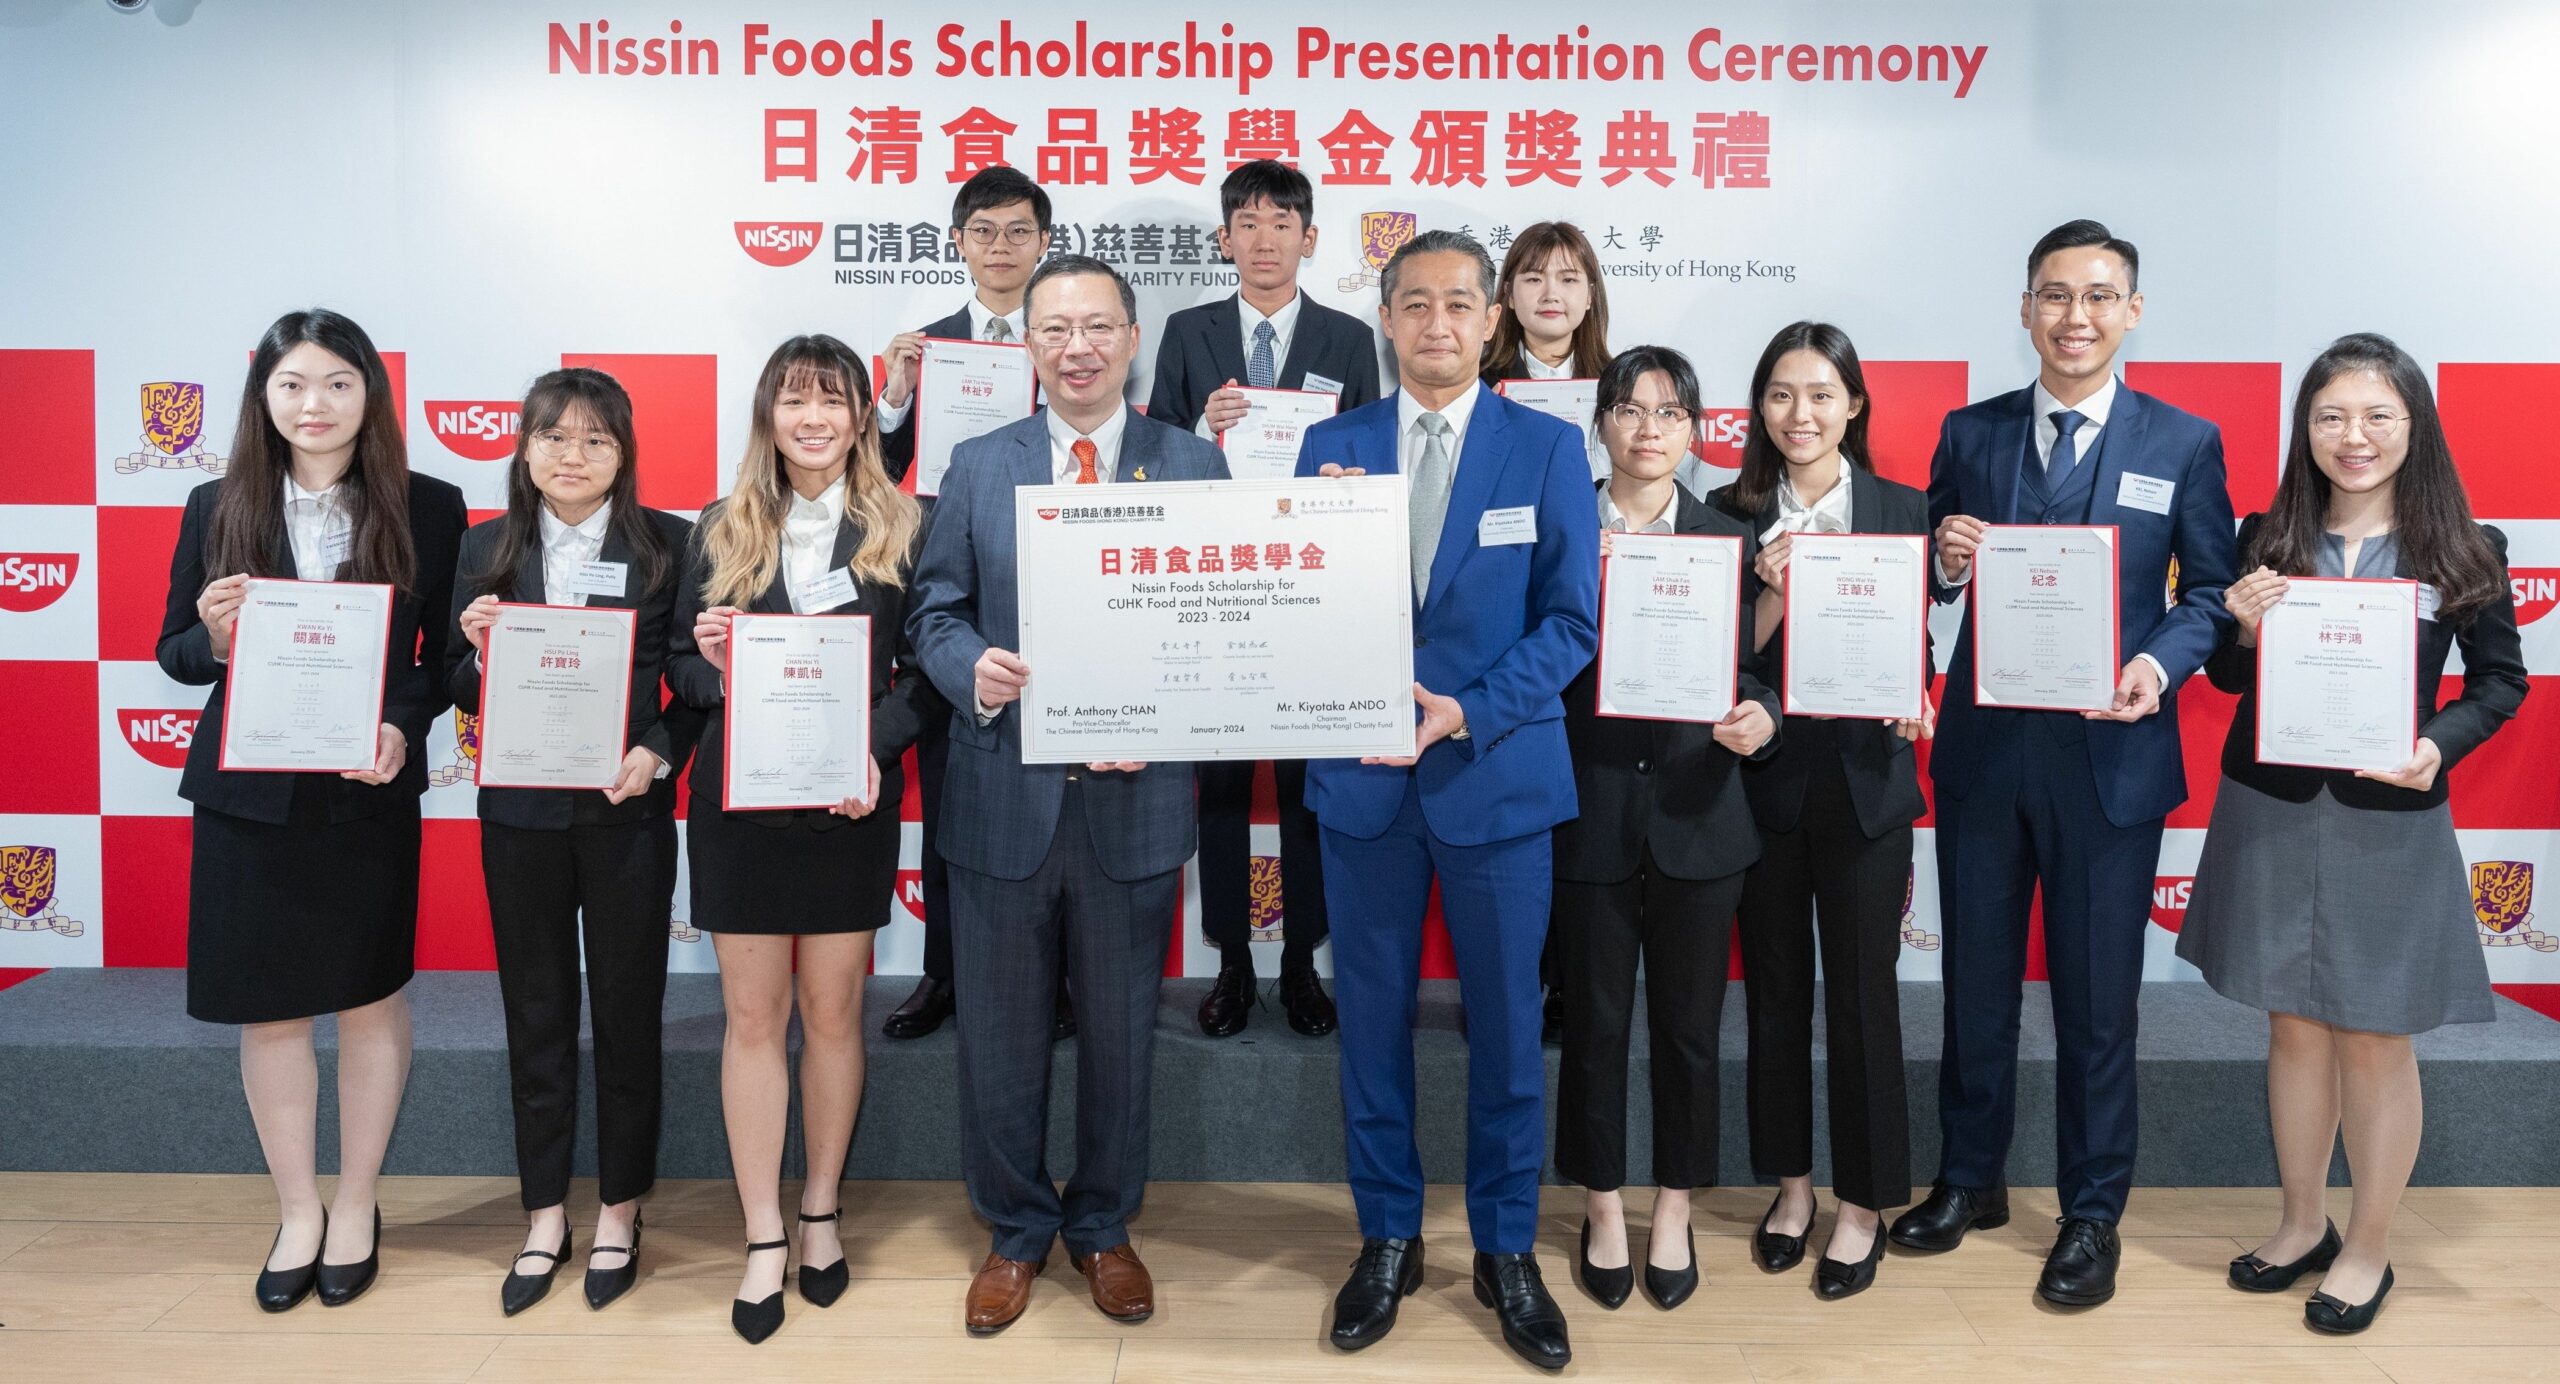 กองทุนการกุศล Nissin Foods (ฮ่องกง) ยังคงสนับสนุนผู้มีความสามารถในด้านวิทยาศาสตร์การอาหารและโภชนาการต่อไป